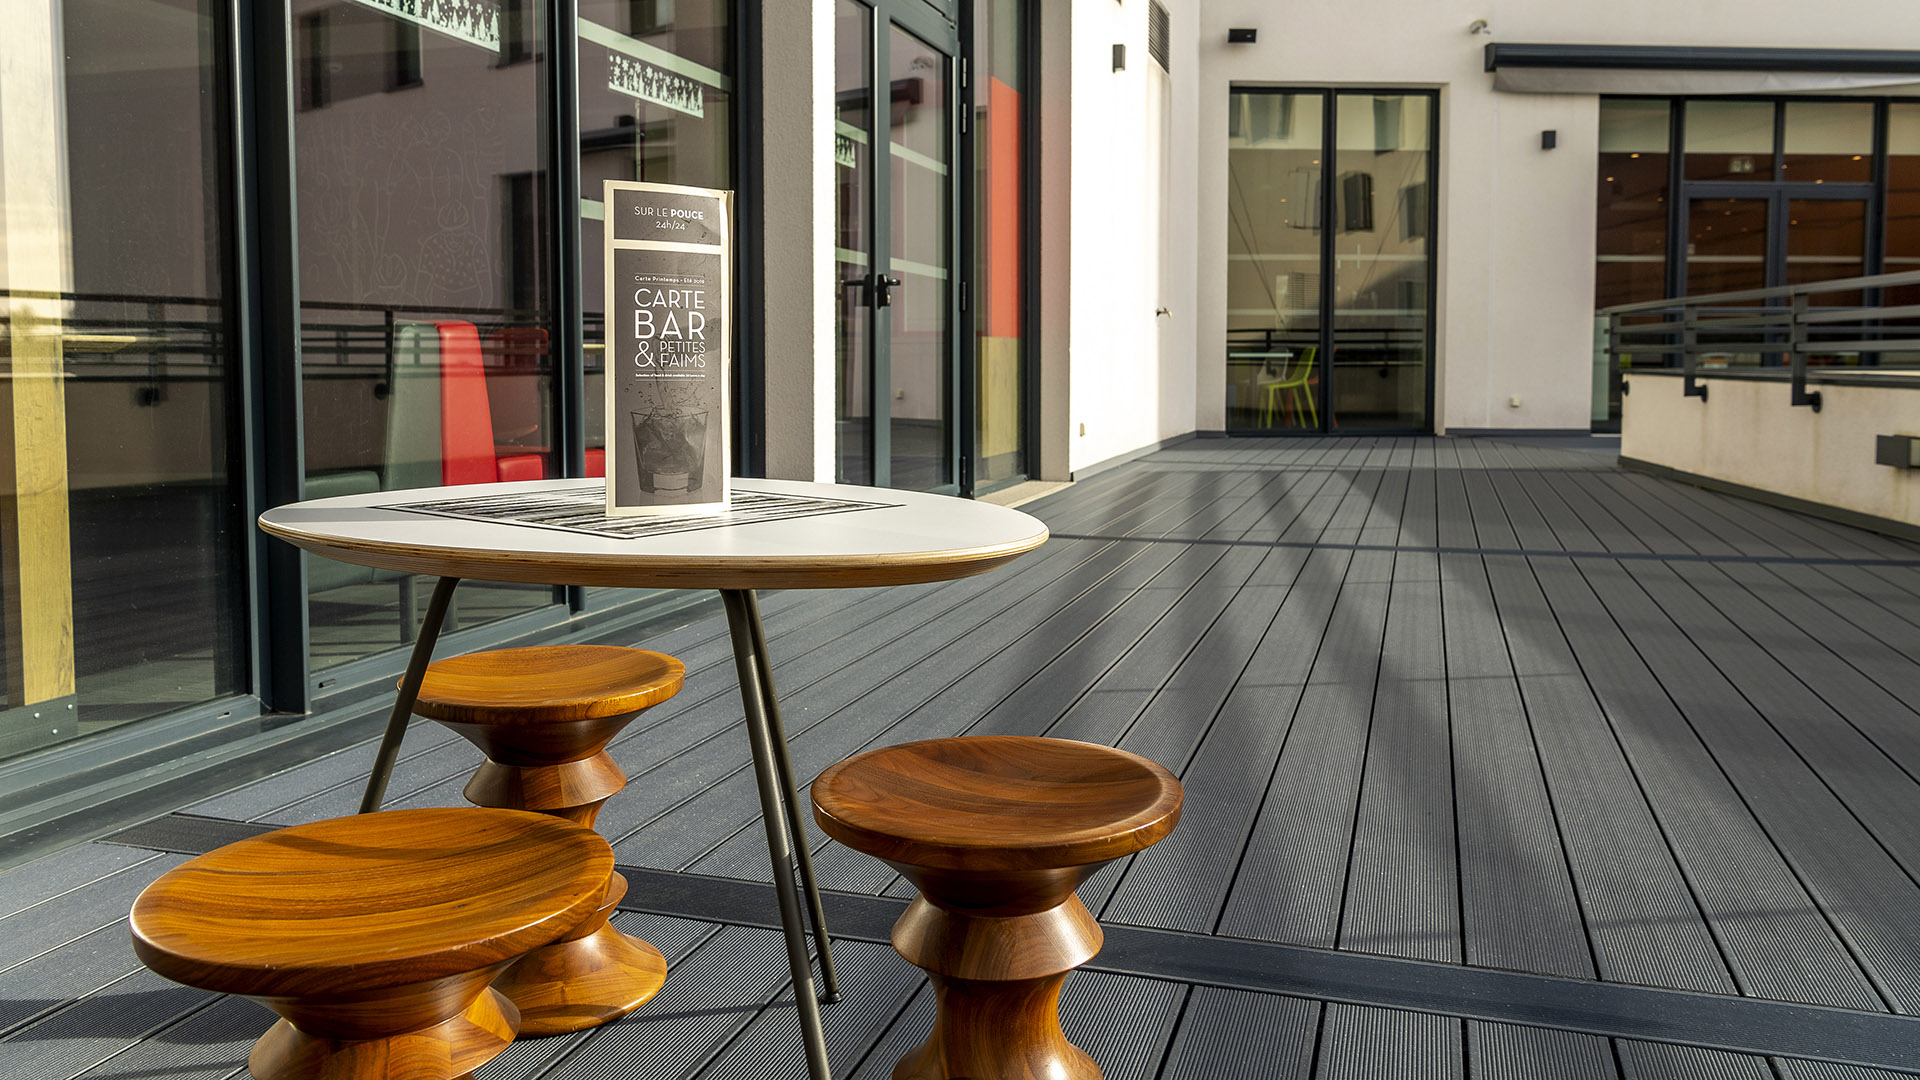 Kommerzielle terrassenbesitzer | UPM ProFi composite deck at restaurants